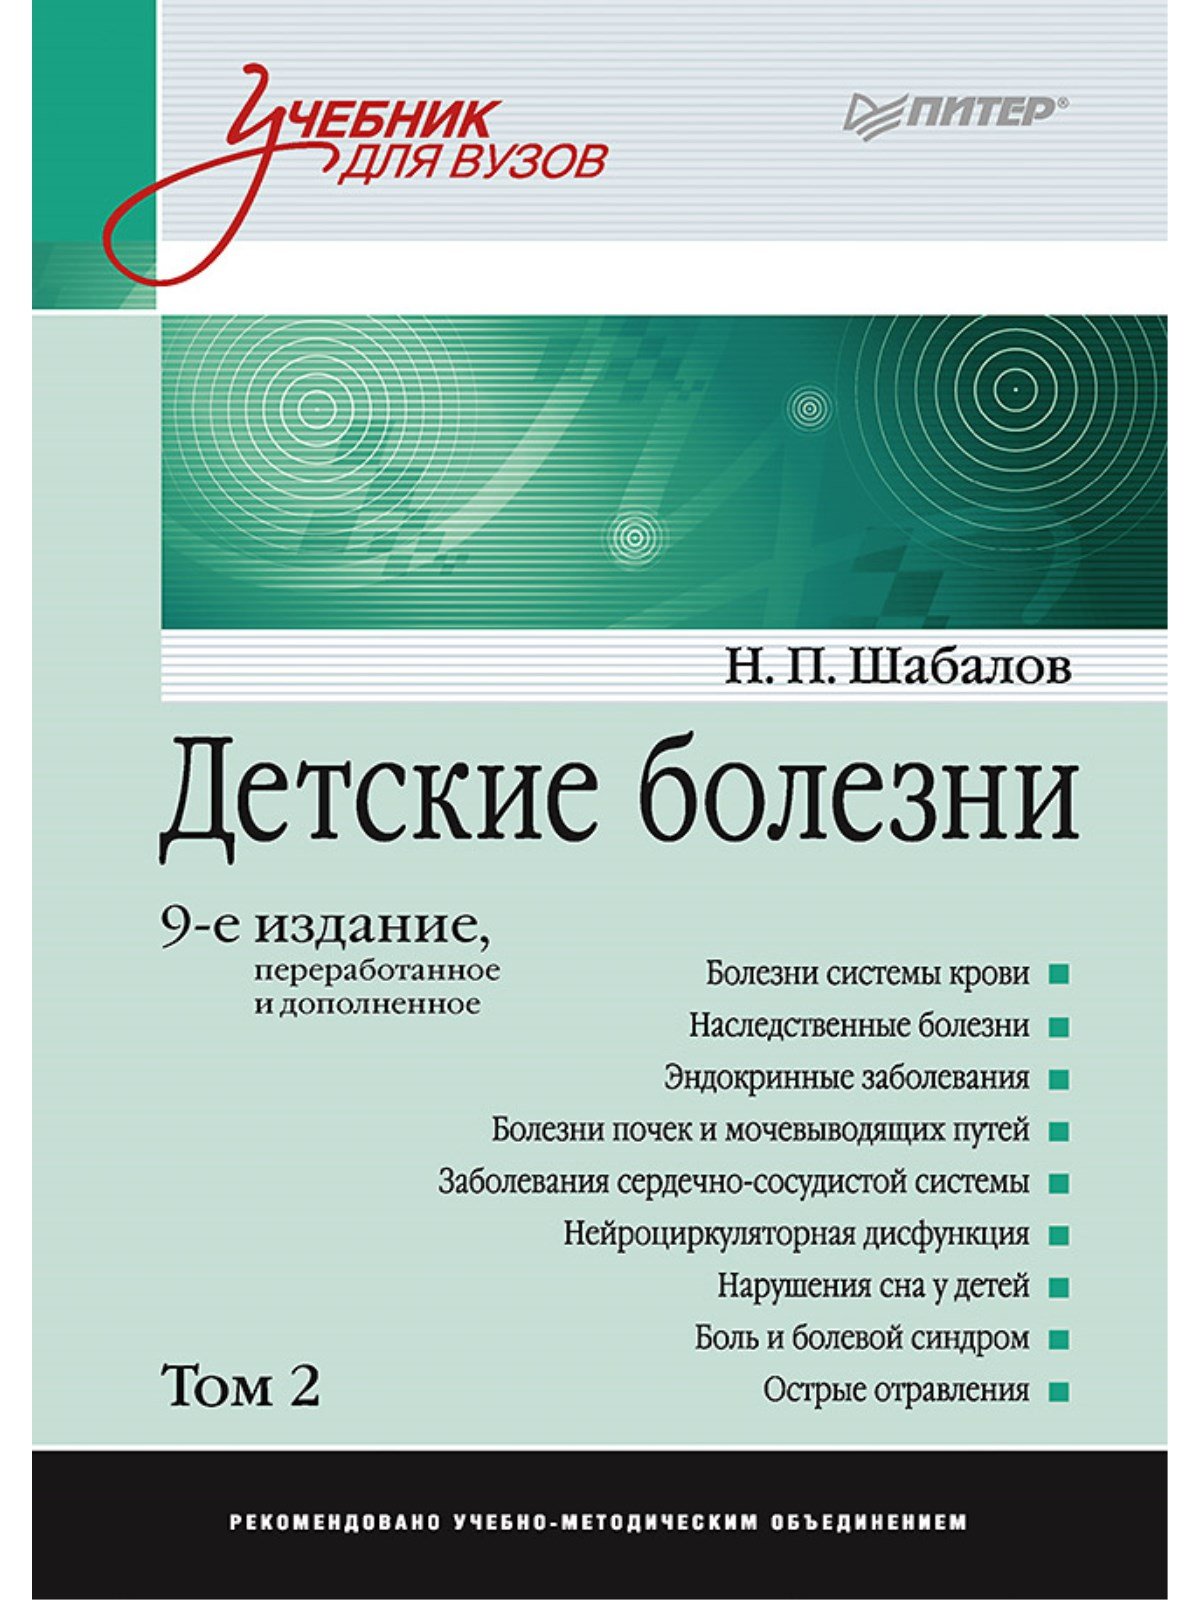 Шабалов Н. - Детские болезни: Учебник для вузов (том 2). 9-е изд.  переработанное и дополненное